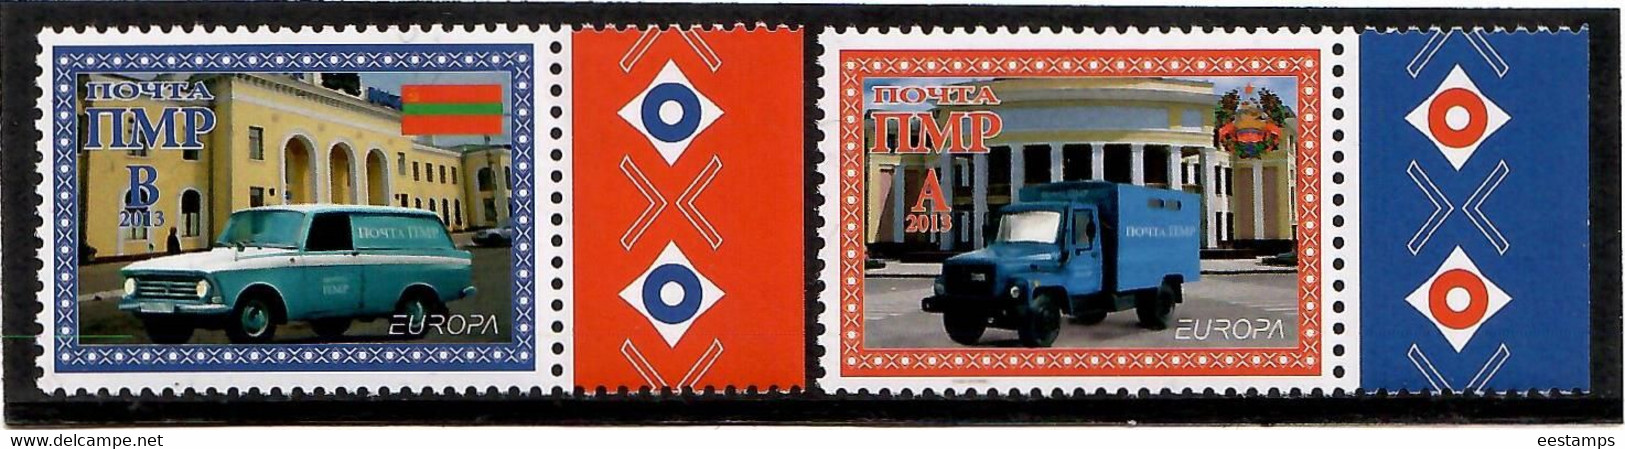 Moldova / PMR Transnistria . EUROPA 2013 ( Post Mail Transport ).2v:A,B - Moldavie